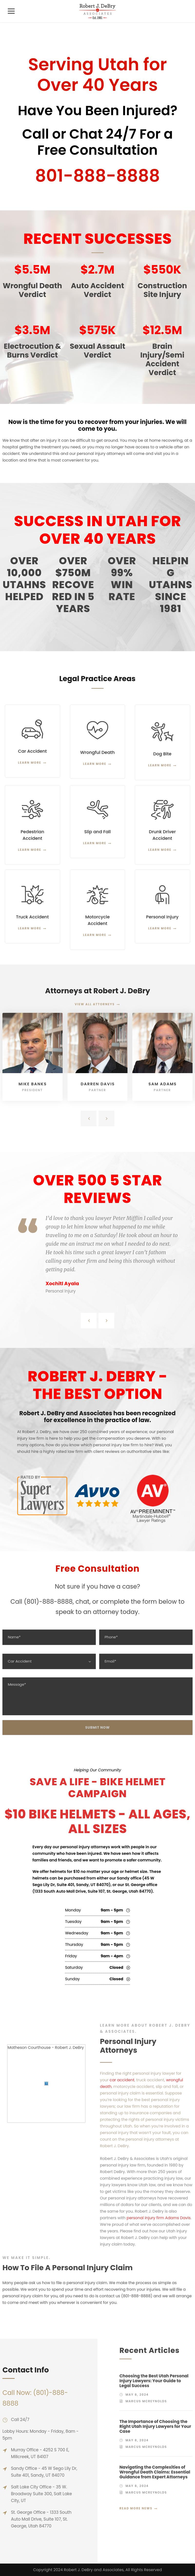 Robert J. DeBry & Associates - Salt Lake City UT Lawyers